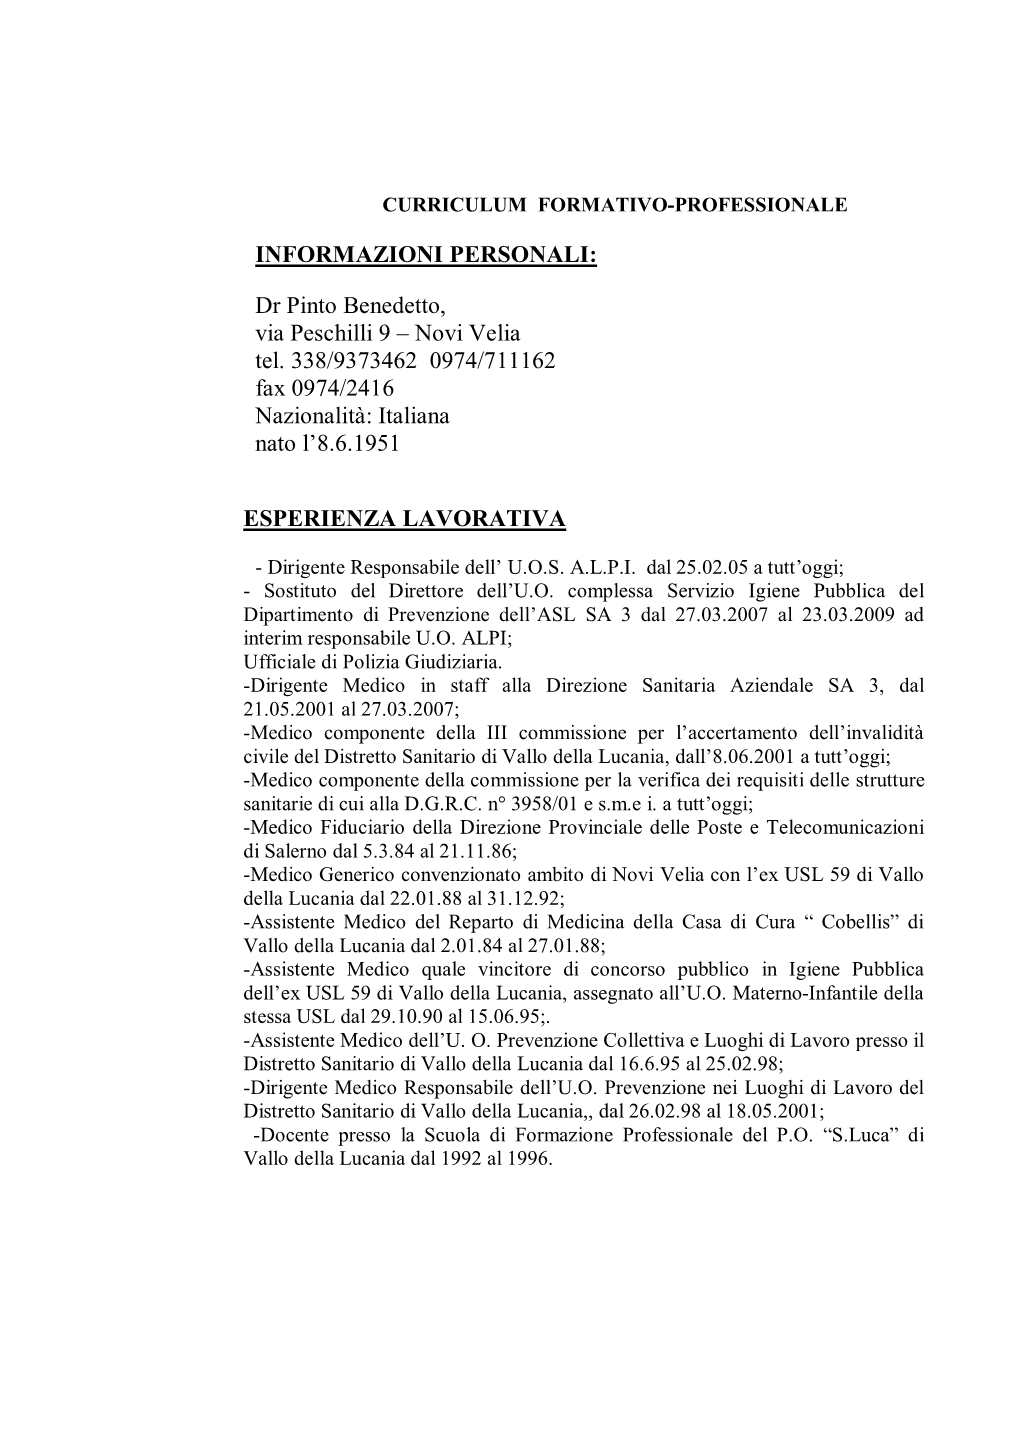 Dr Pinto Benedetto, Via Peschilli 9 – Novi Velia Tel. 338/9373462 0974/711162 Fax 0974/2416 Nazionalità: Italiana Nato L’8.6.1951